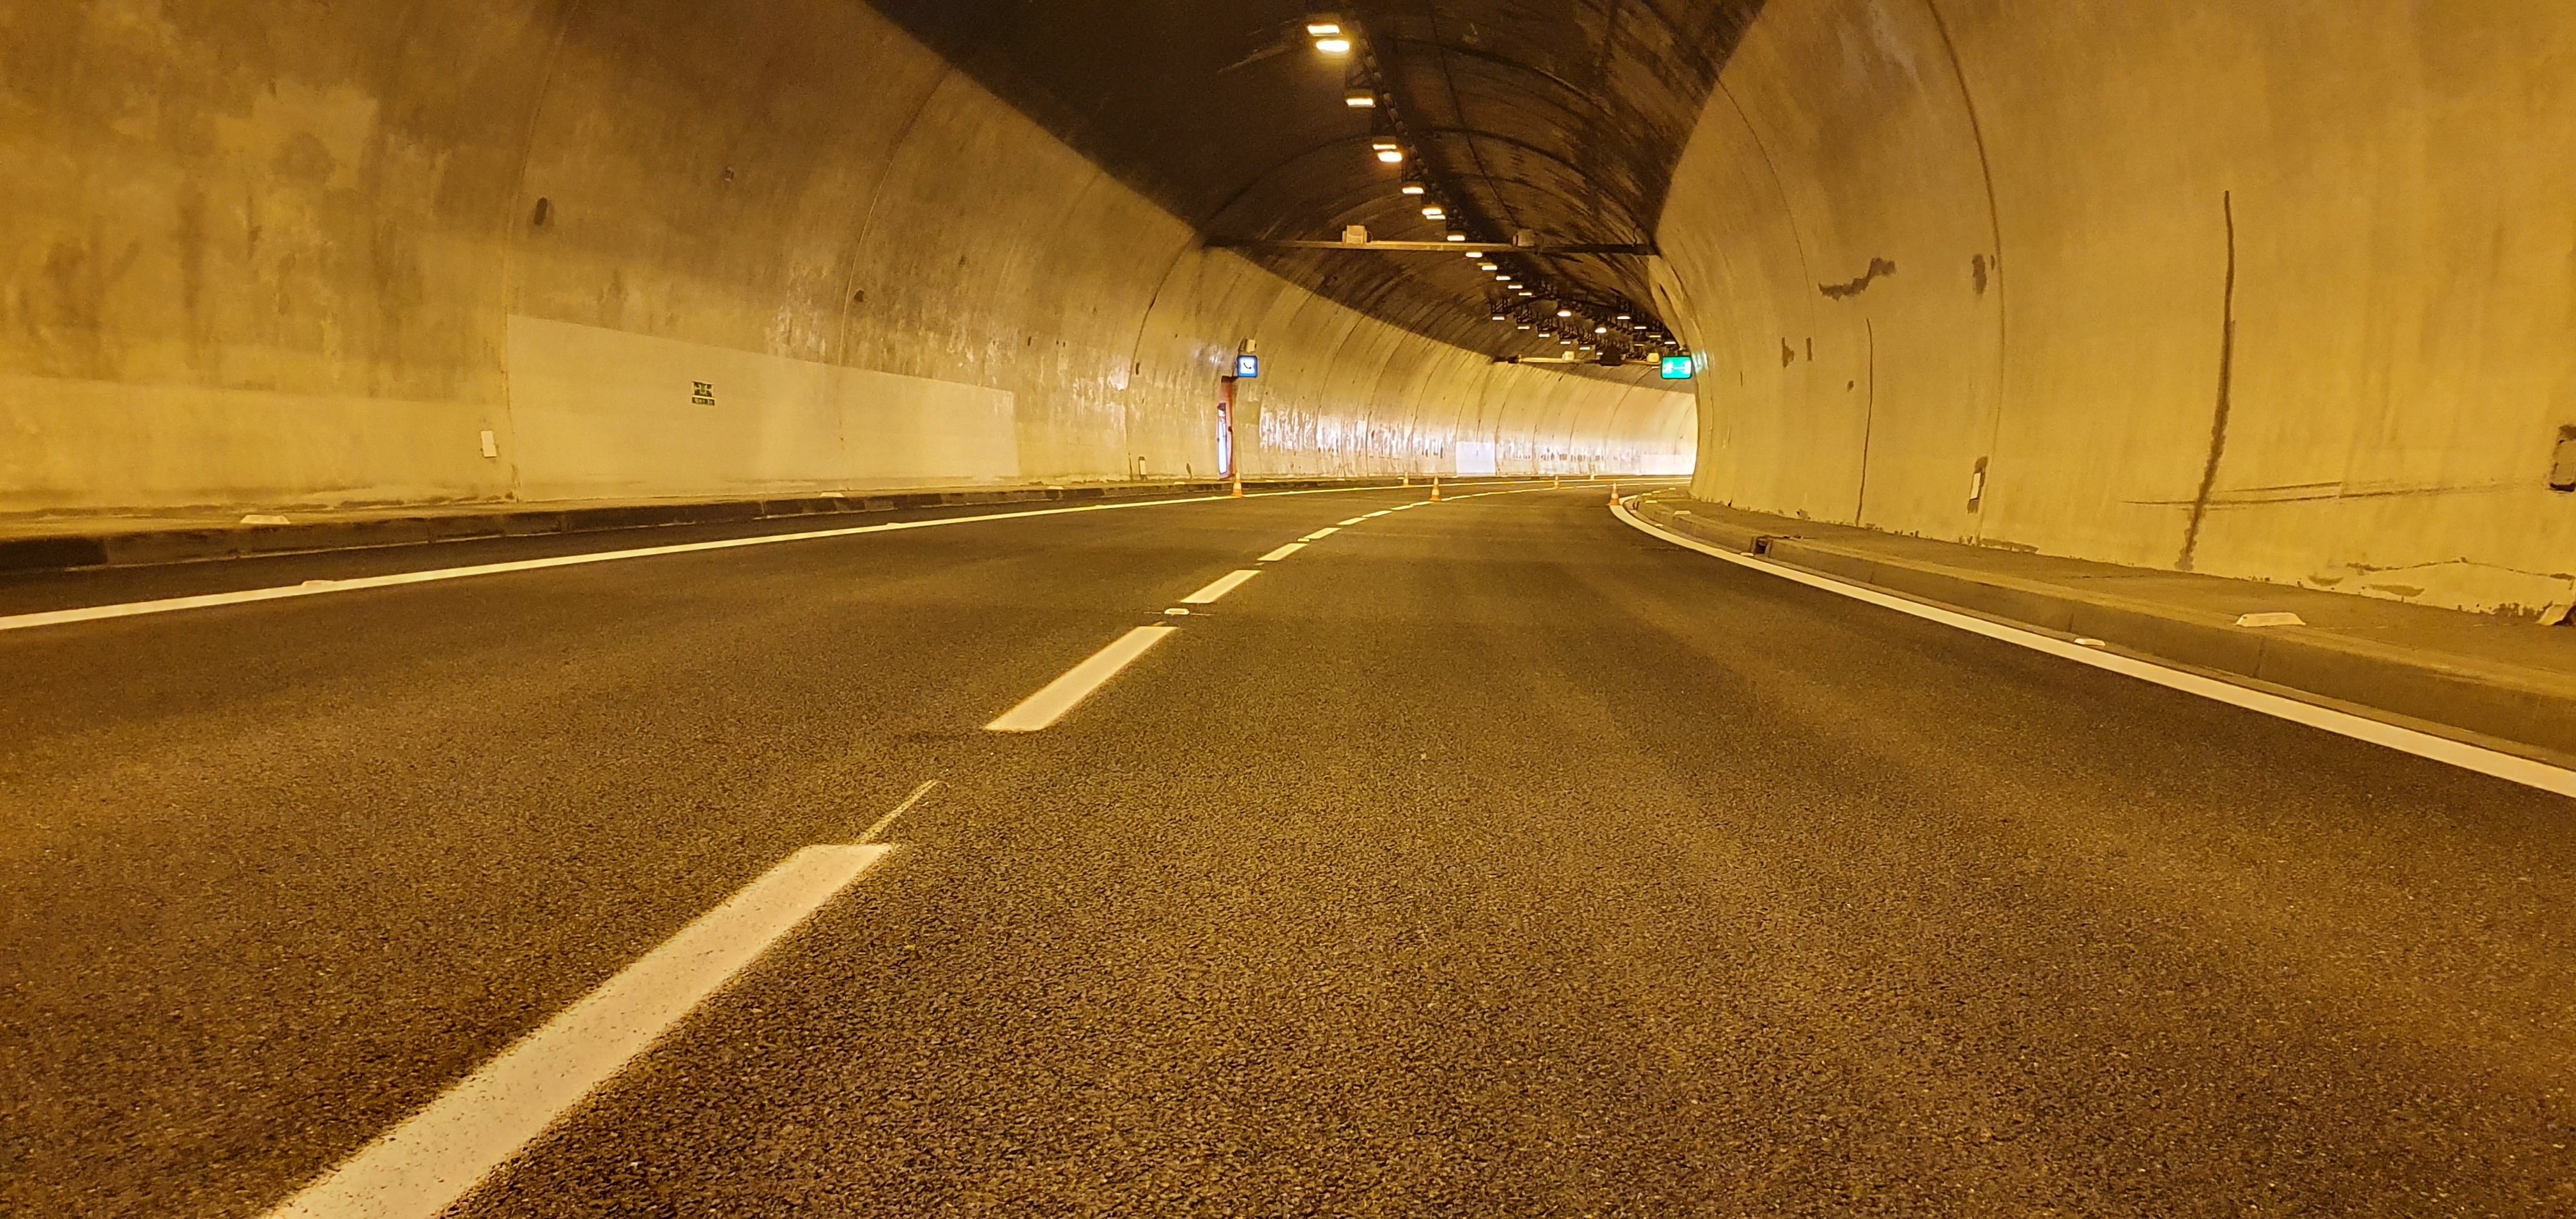 Silnice I/23 – rekonstrukce Pisáreckého tunelu - Stavby silnic a mostů